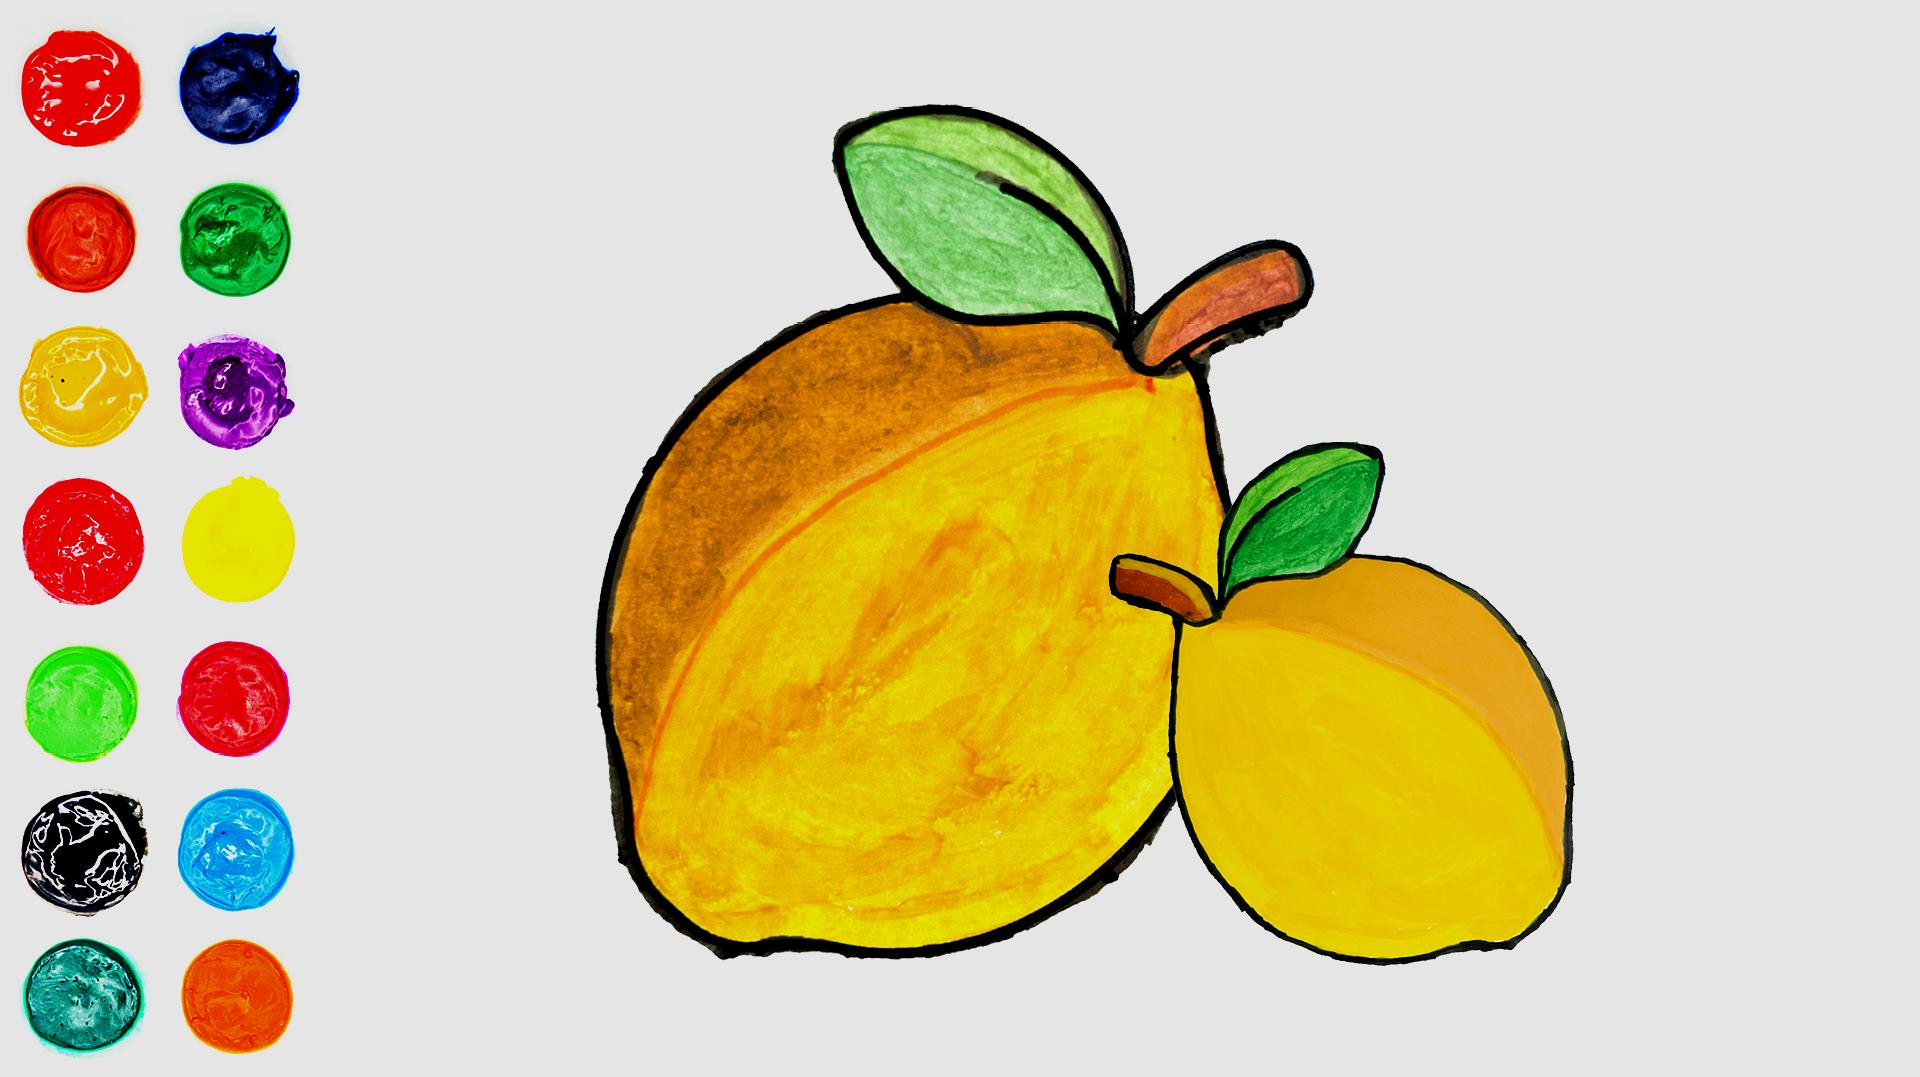 1简单形象的柠檬画法 2简单可爱的柠檬画法  01:59  来源:好看视频